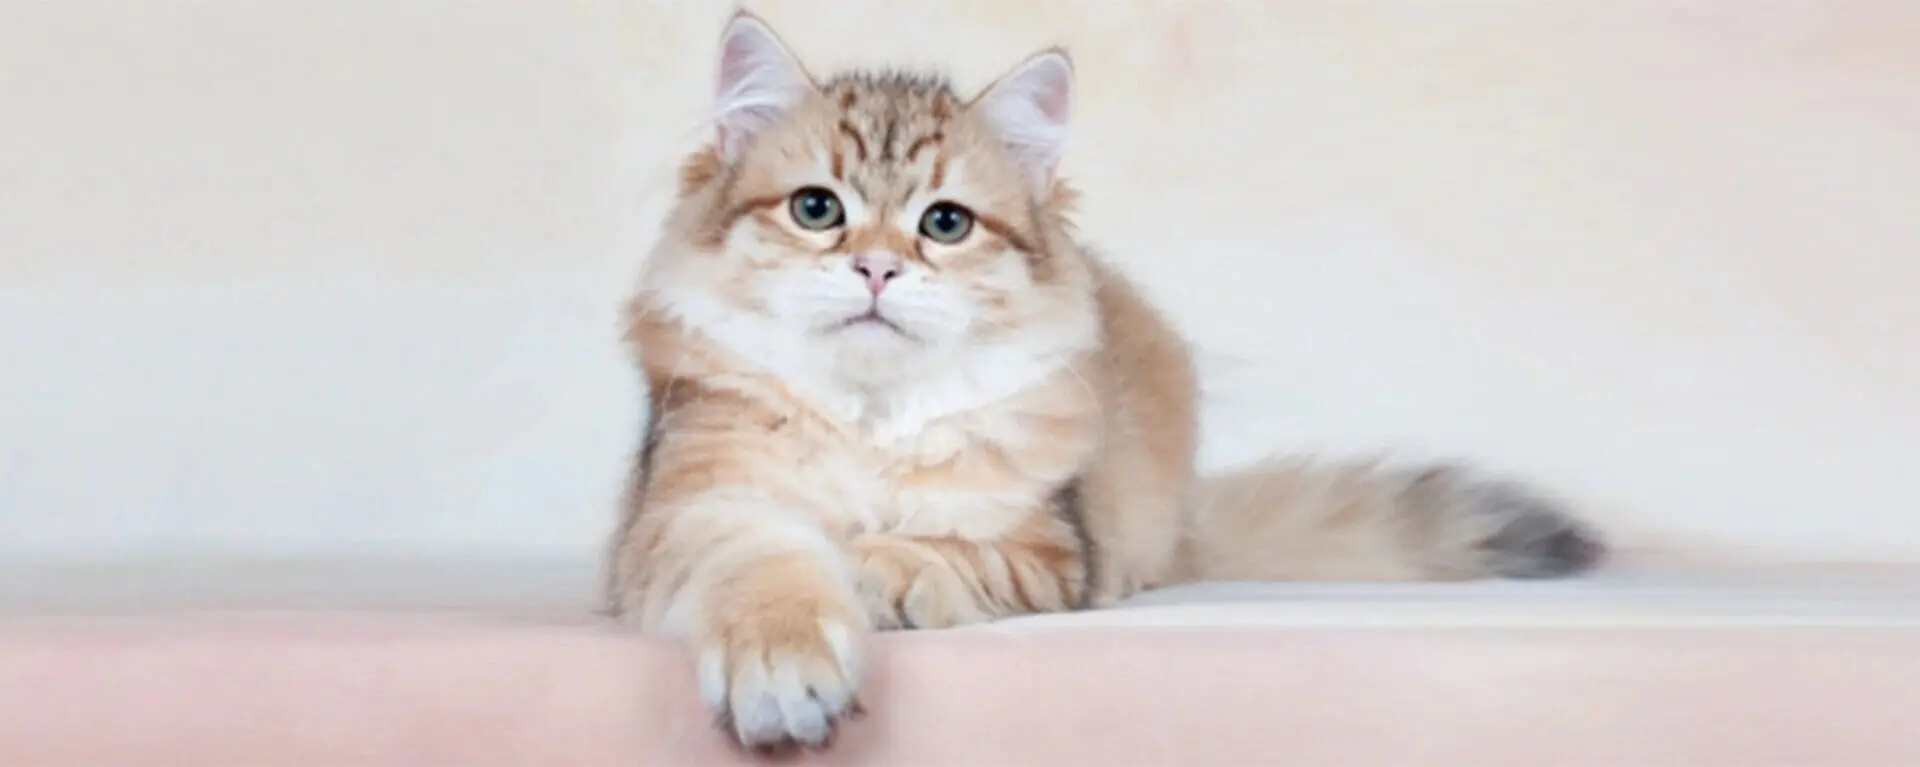 Хламидиоз у кошек: симптомы, схема лечения, профилактика | PRO PLAN